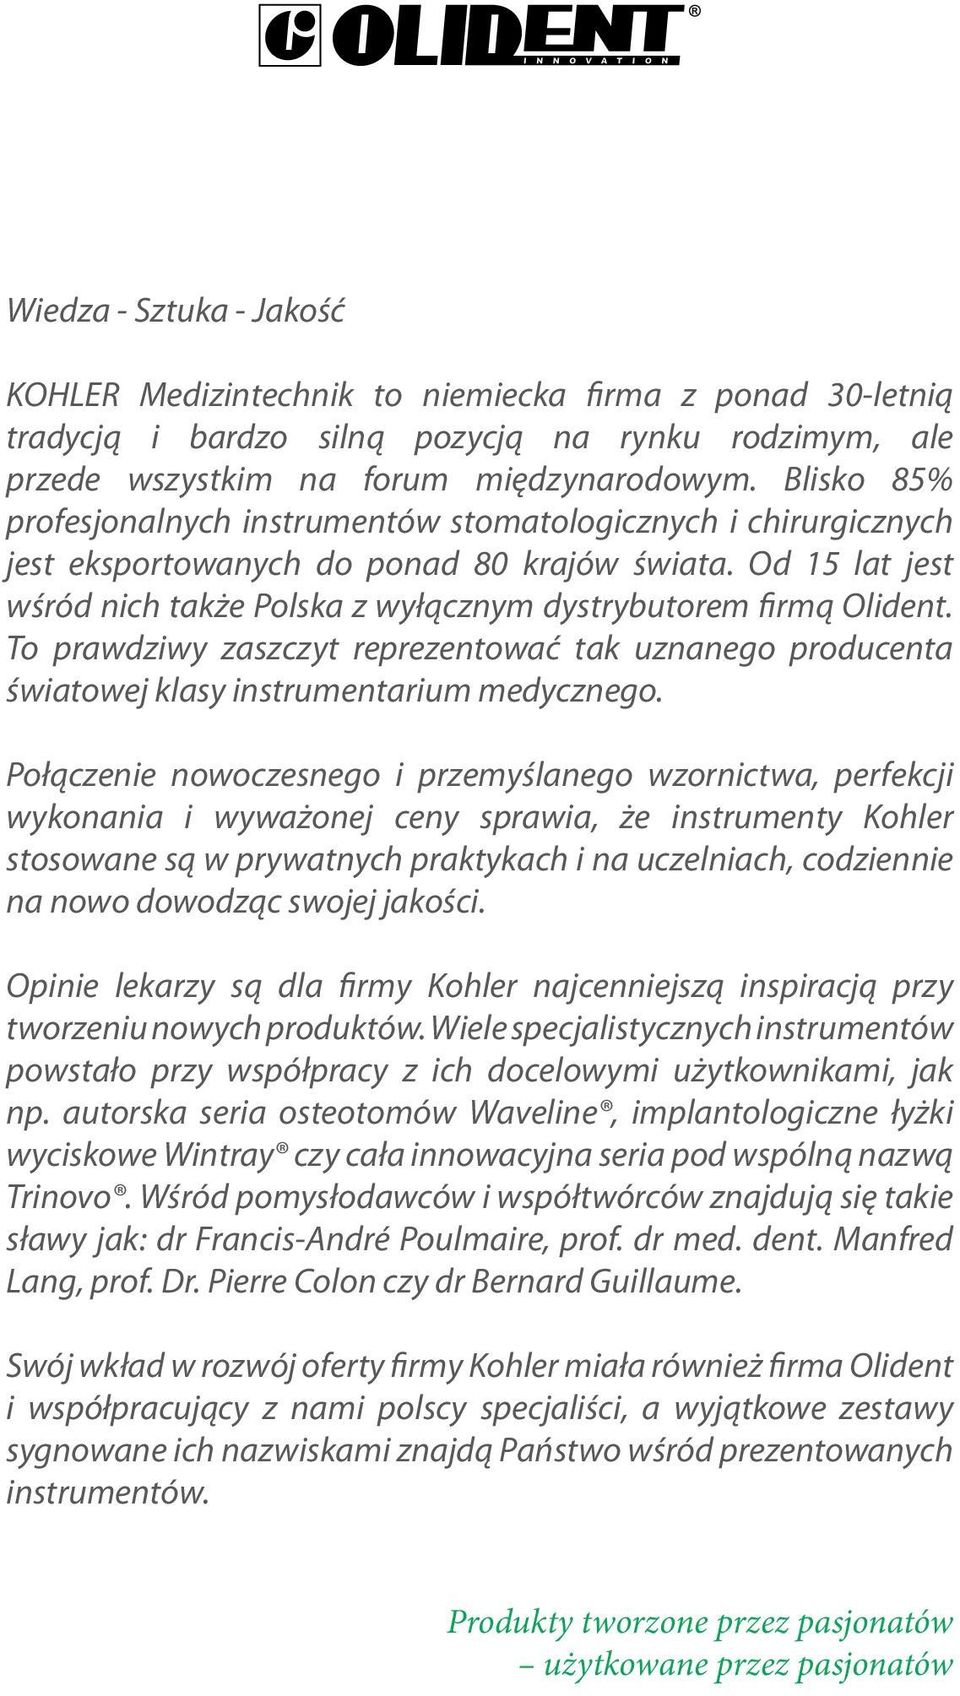 Od 15 lat jest wśród nich także Polska z wyłącznym dystrybutorem firmą Olident. To prawdziwy zaszczyt reprezentować tak uznanego producenta światowej klasy instrumentarium medycznego.